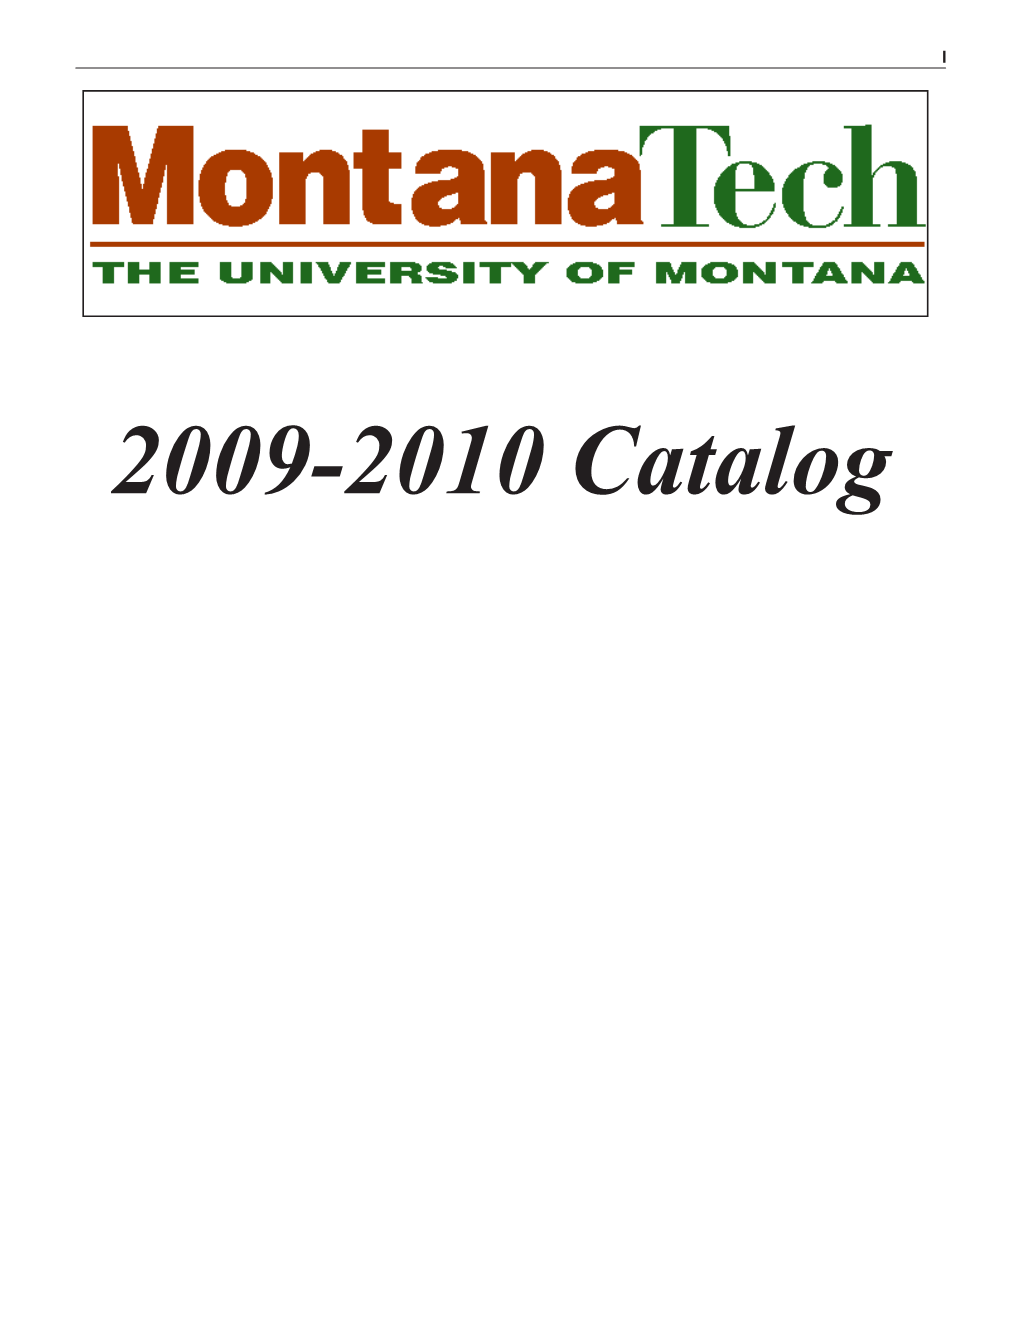 2009/2010 Montana Tech Catalog